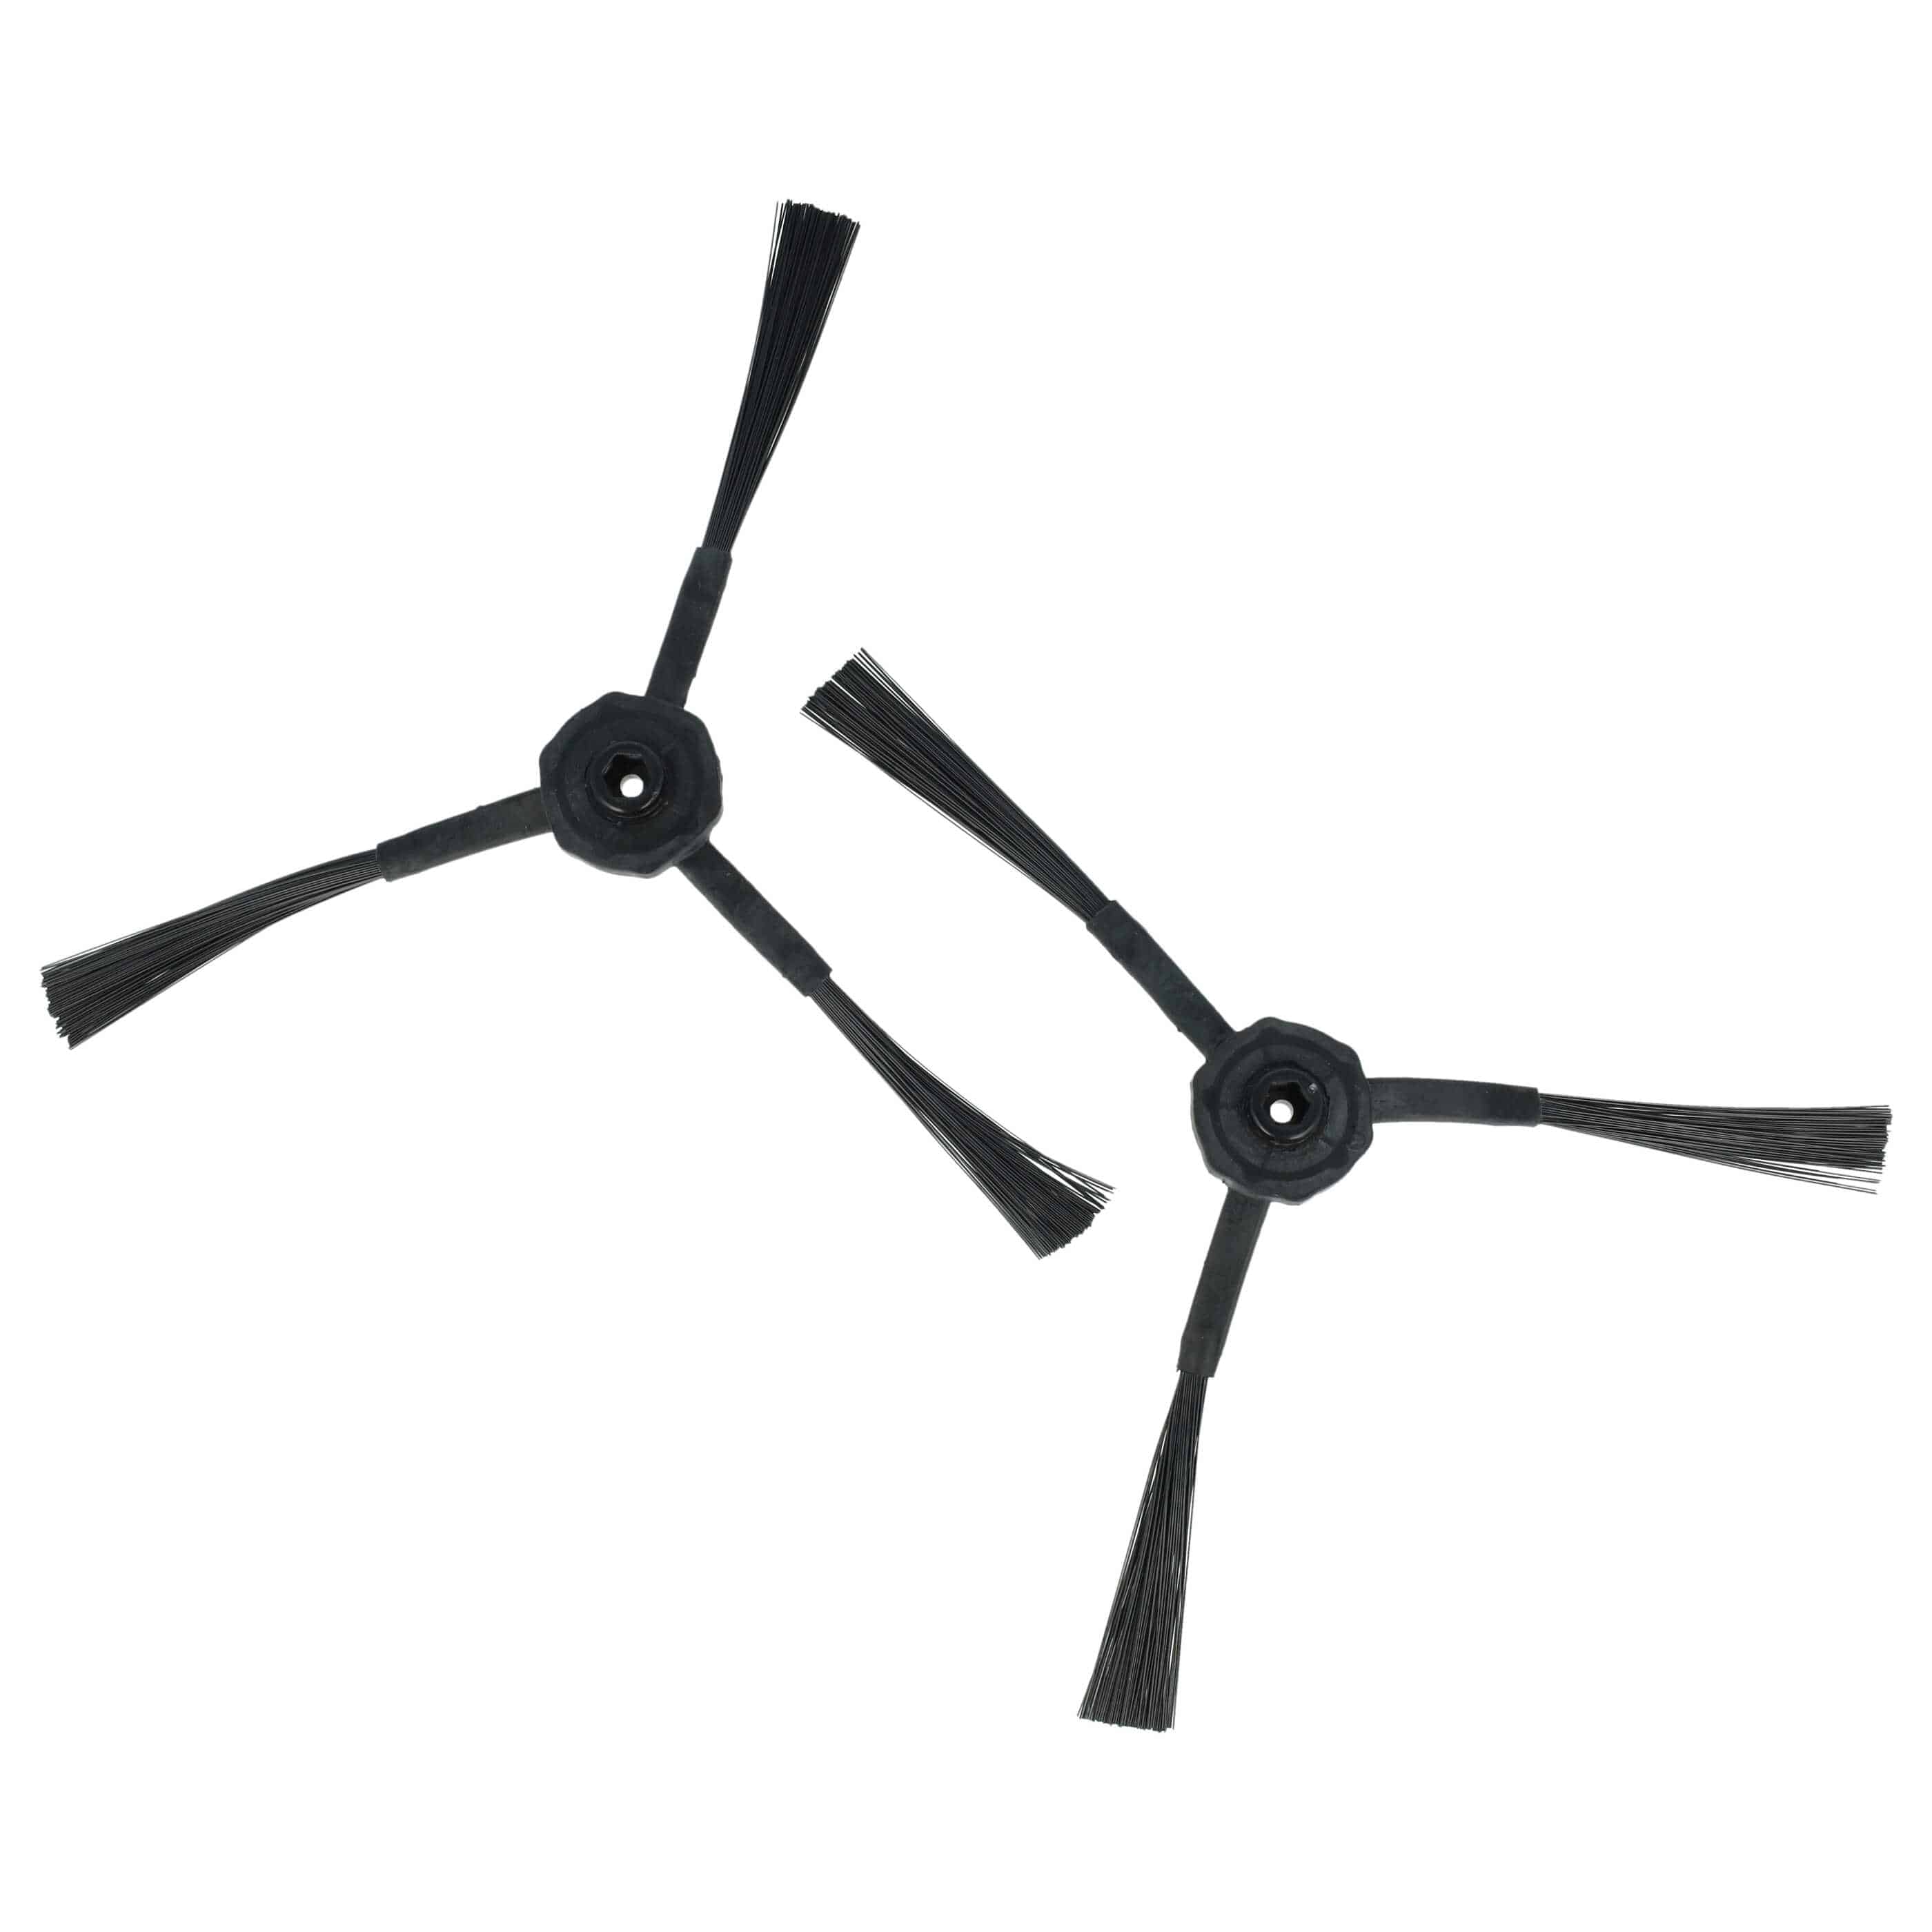 2x Cepillo lateral 3 brazos para robot aspirador iLife, etc. - Set de cepillos negro